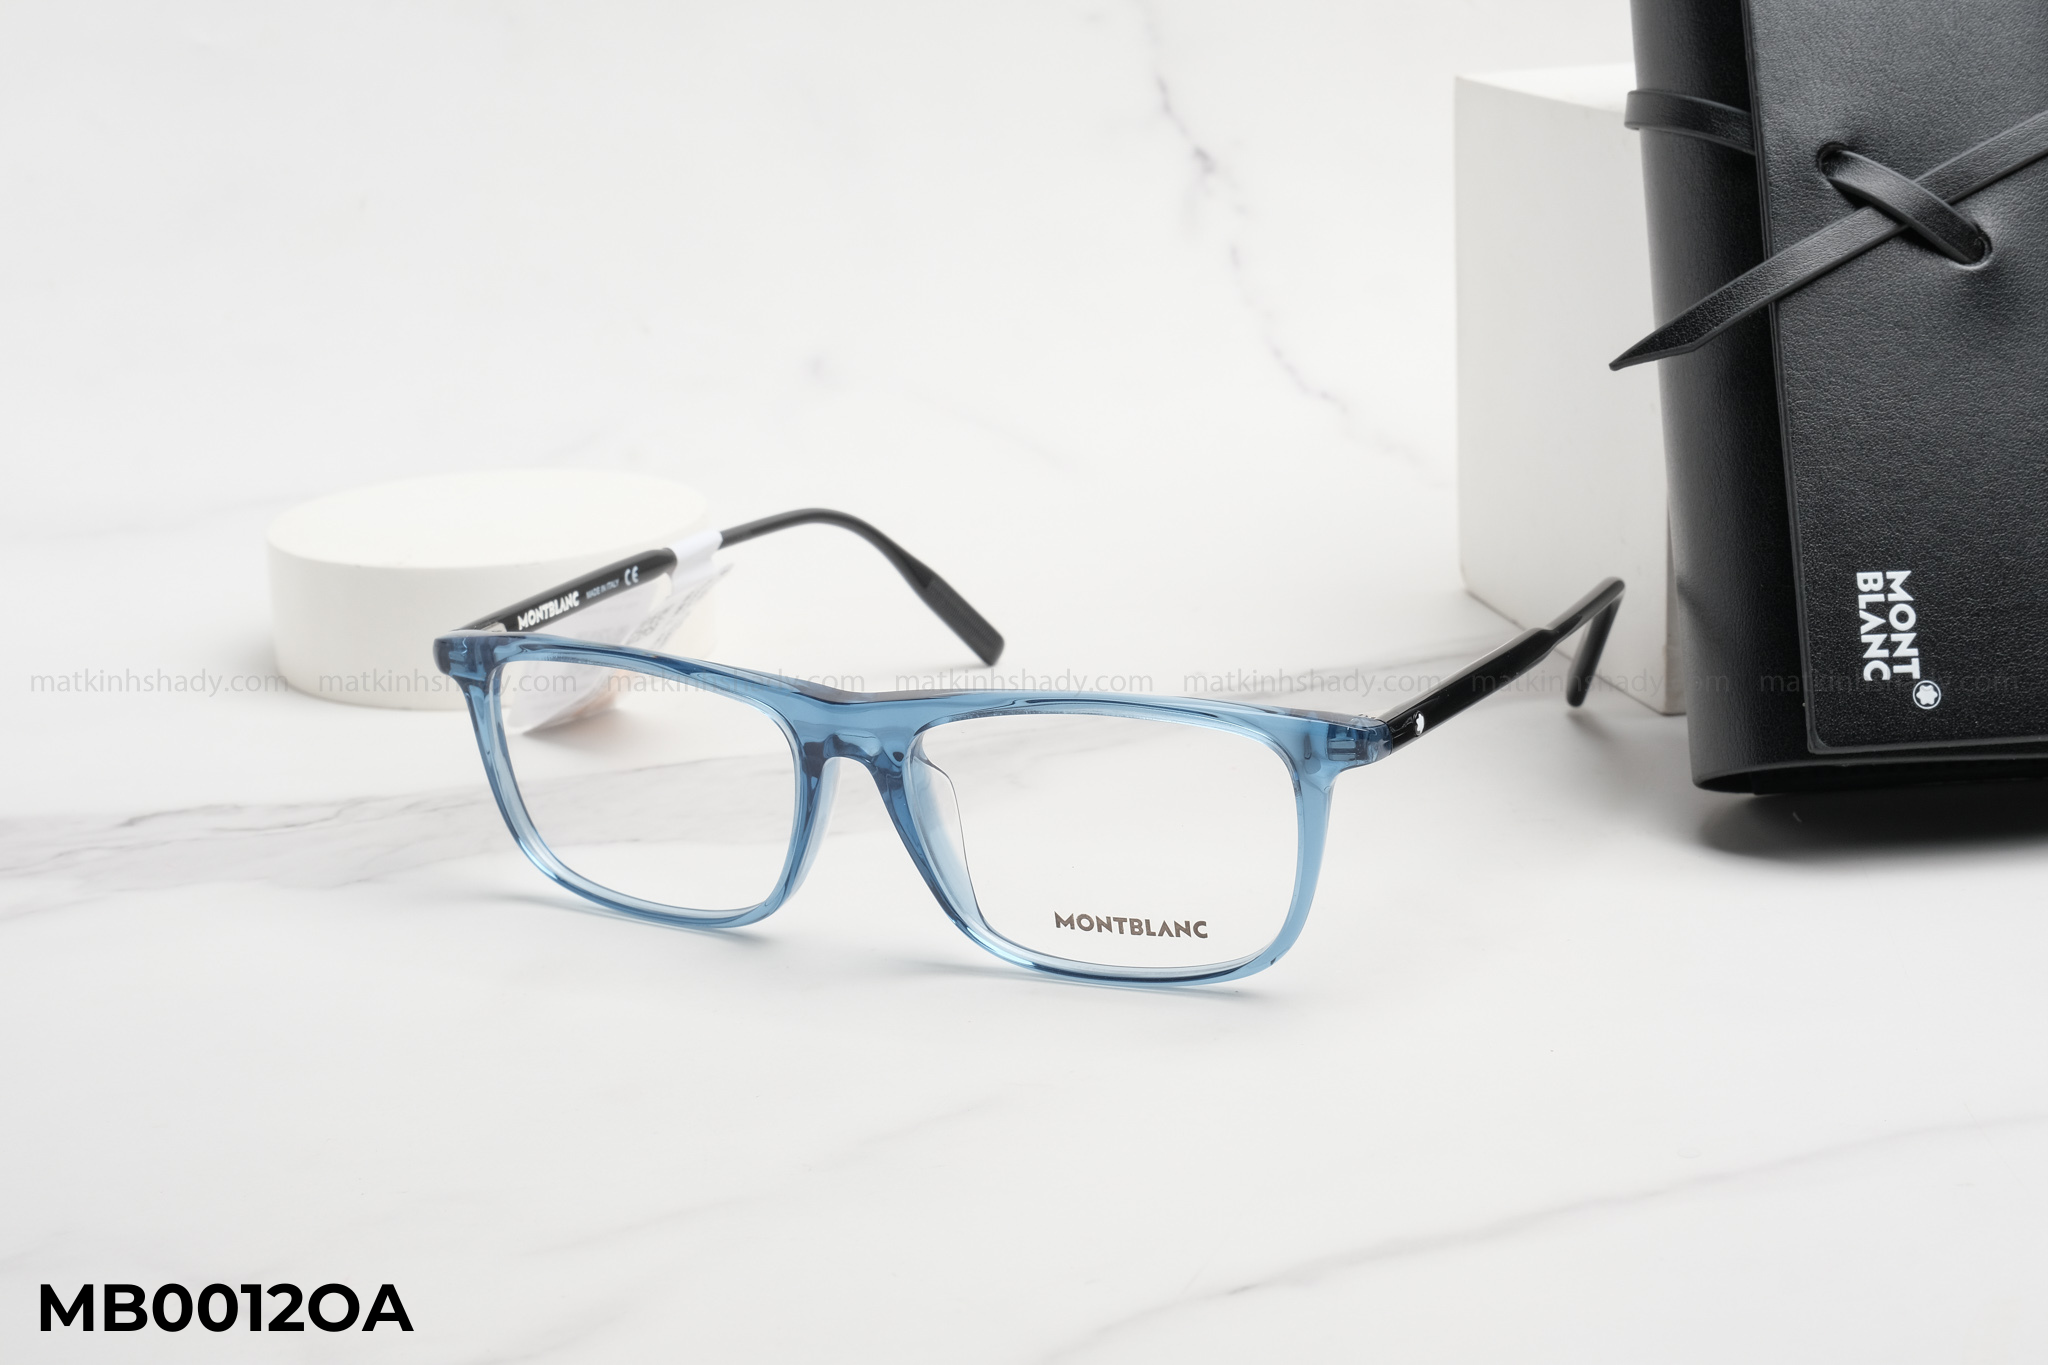  Montblanc Eyewear - Glasses - MB0012 